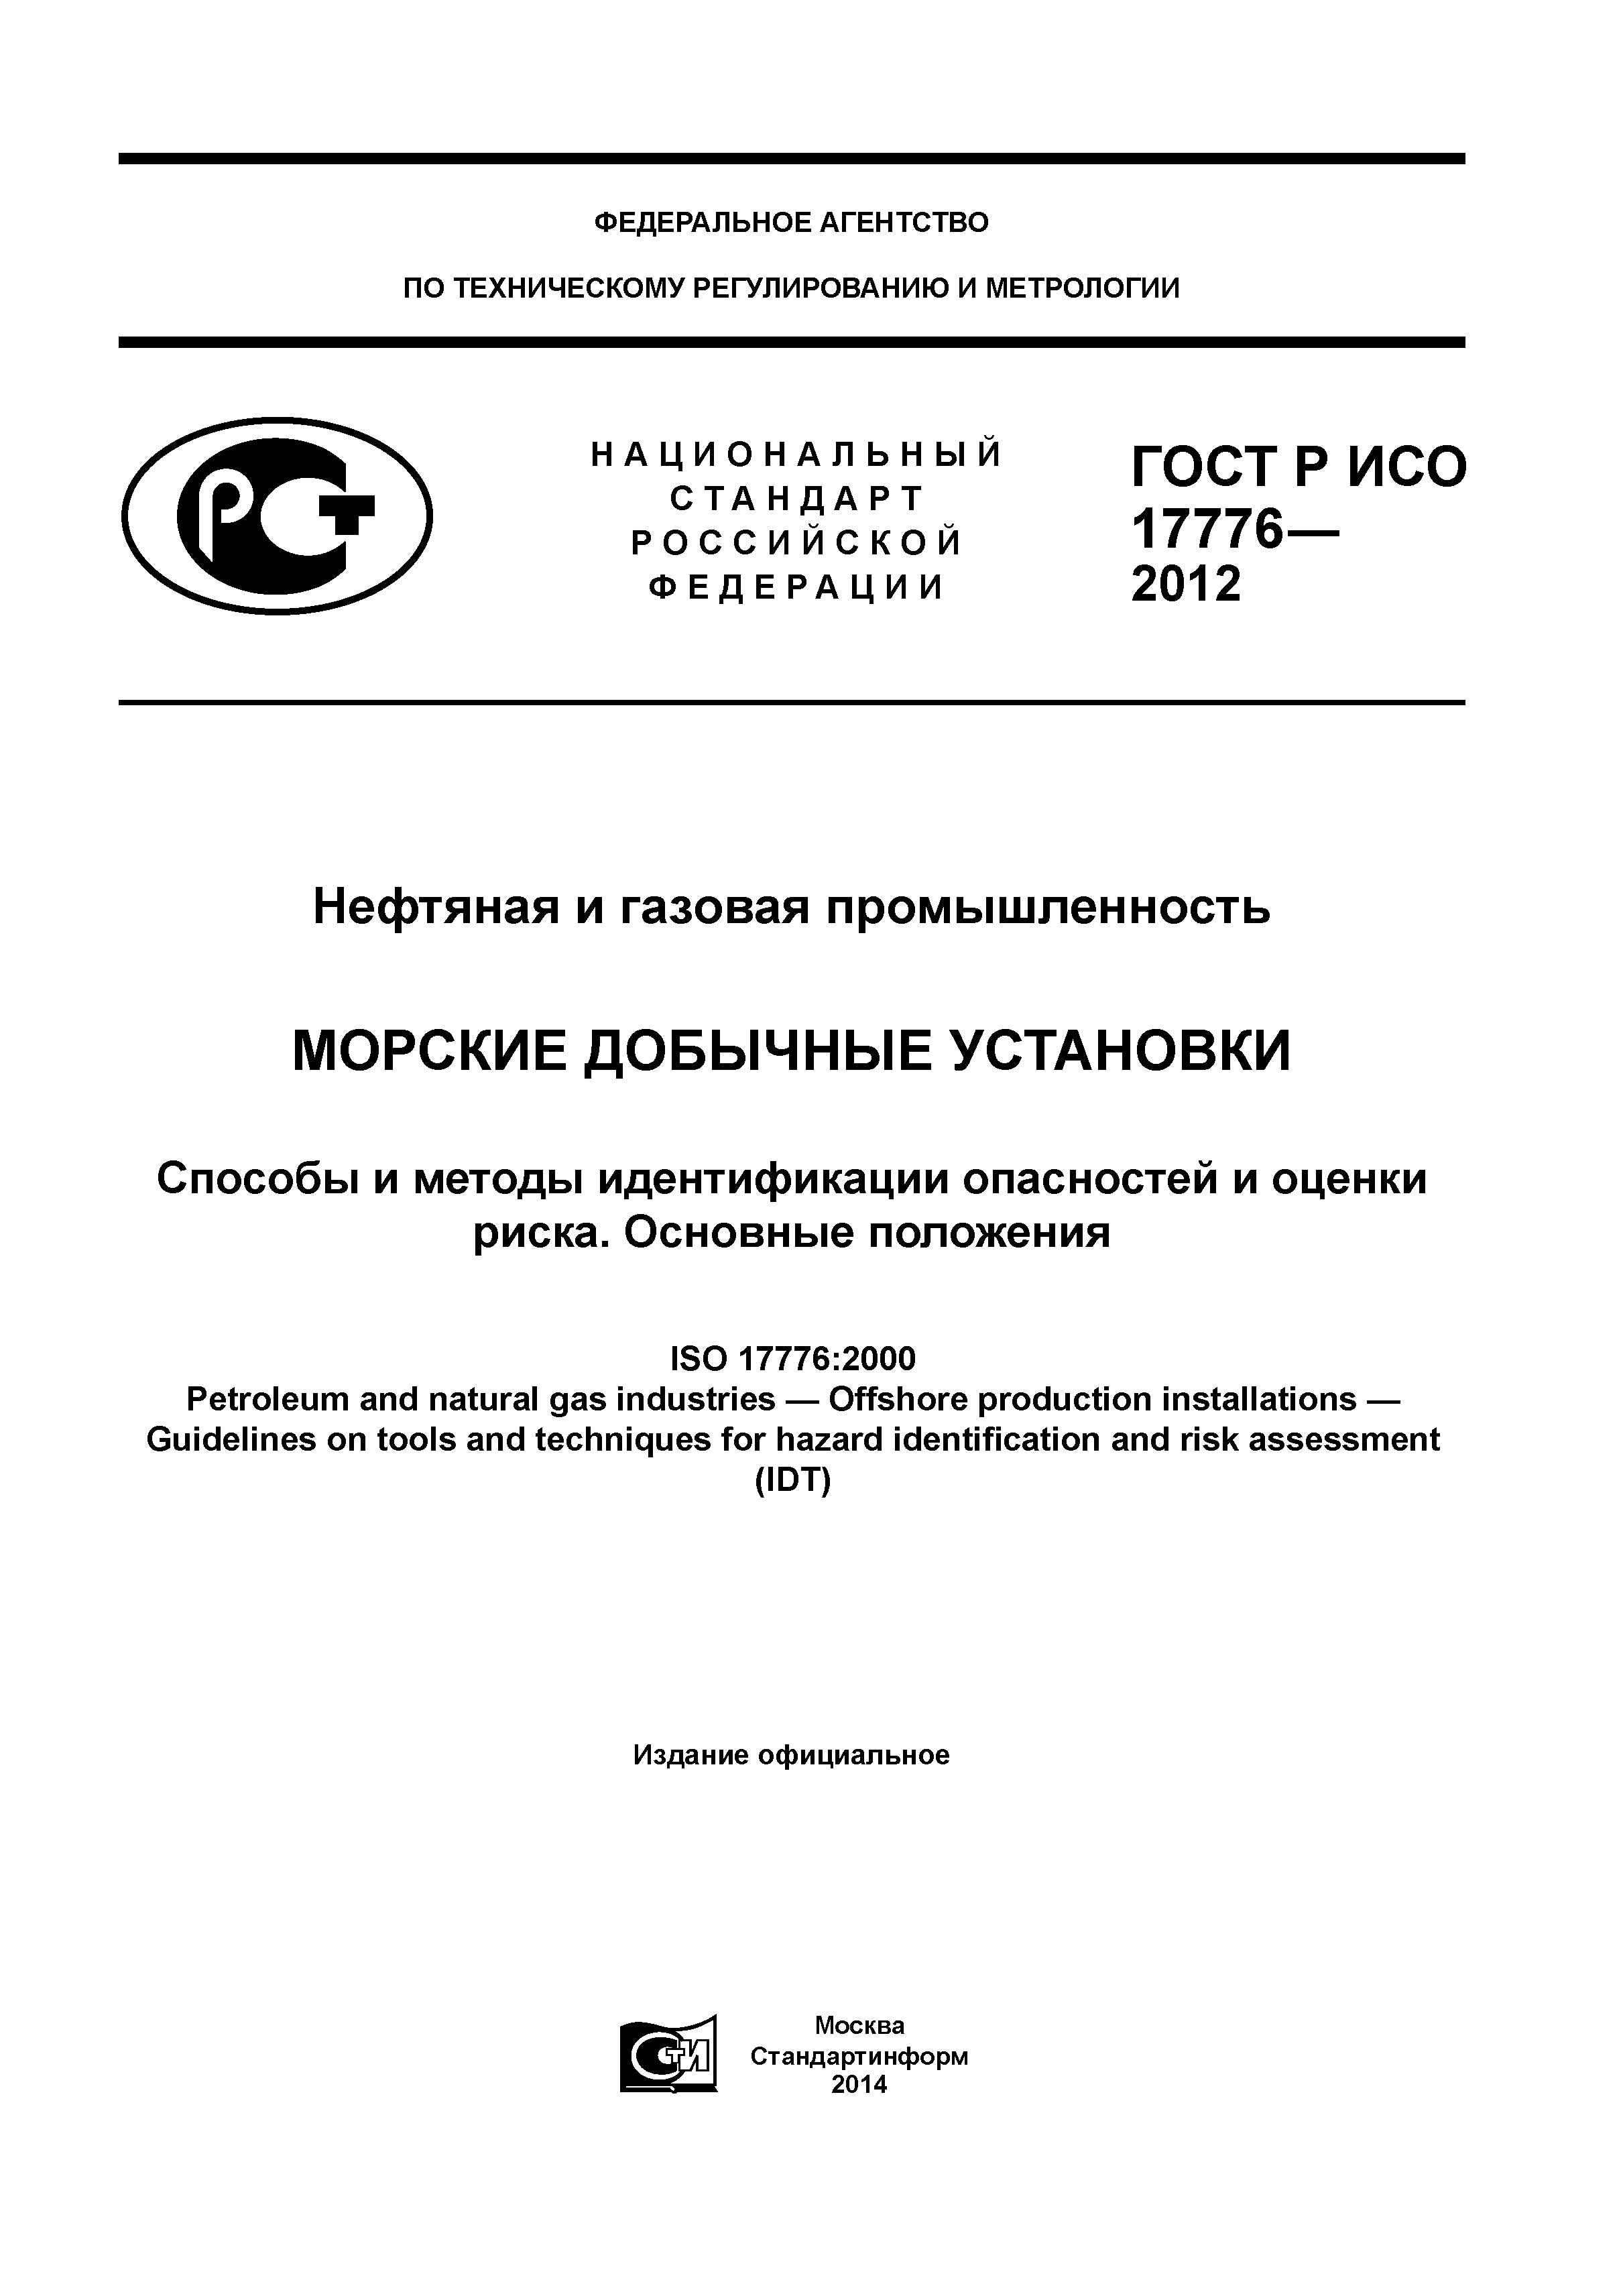 ГОСТ Р ИСО 17776-2012